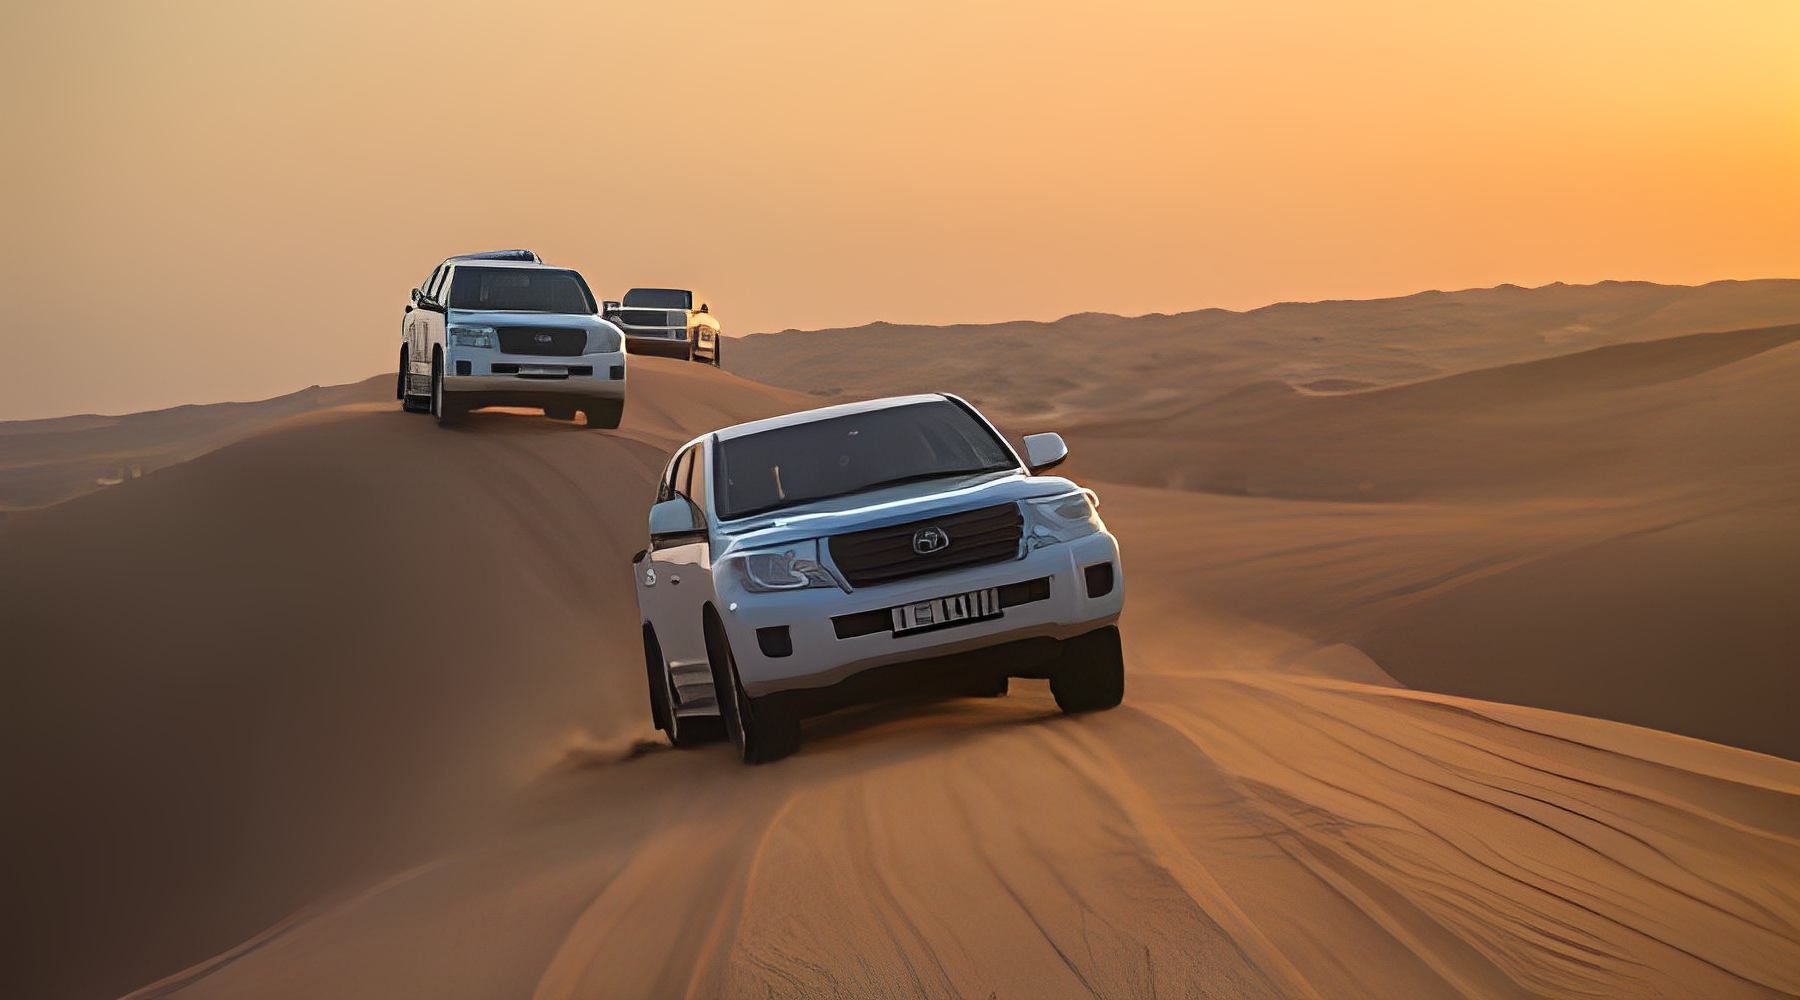 Exciting Desert Trip in Dubai